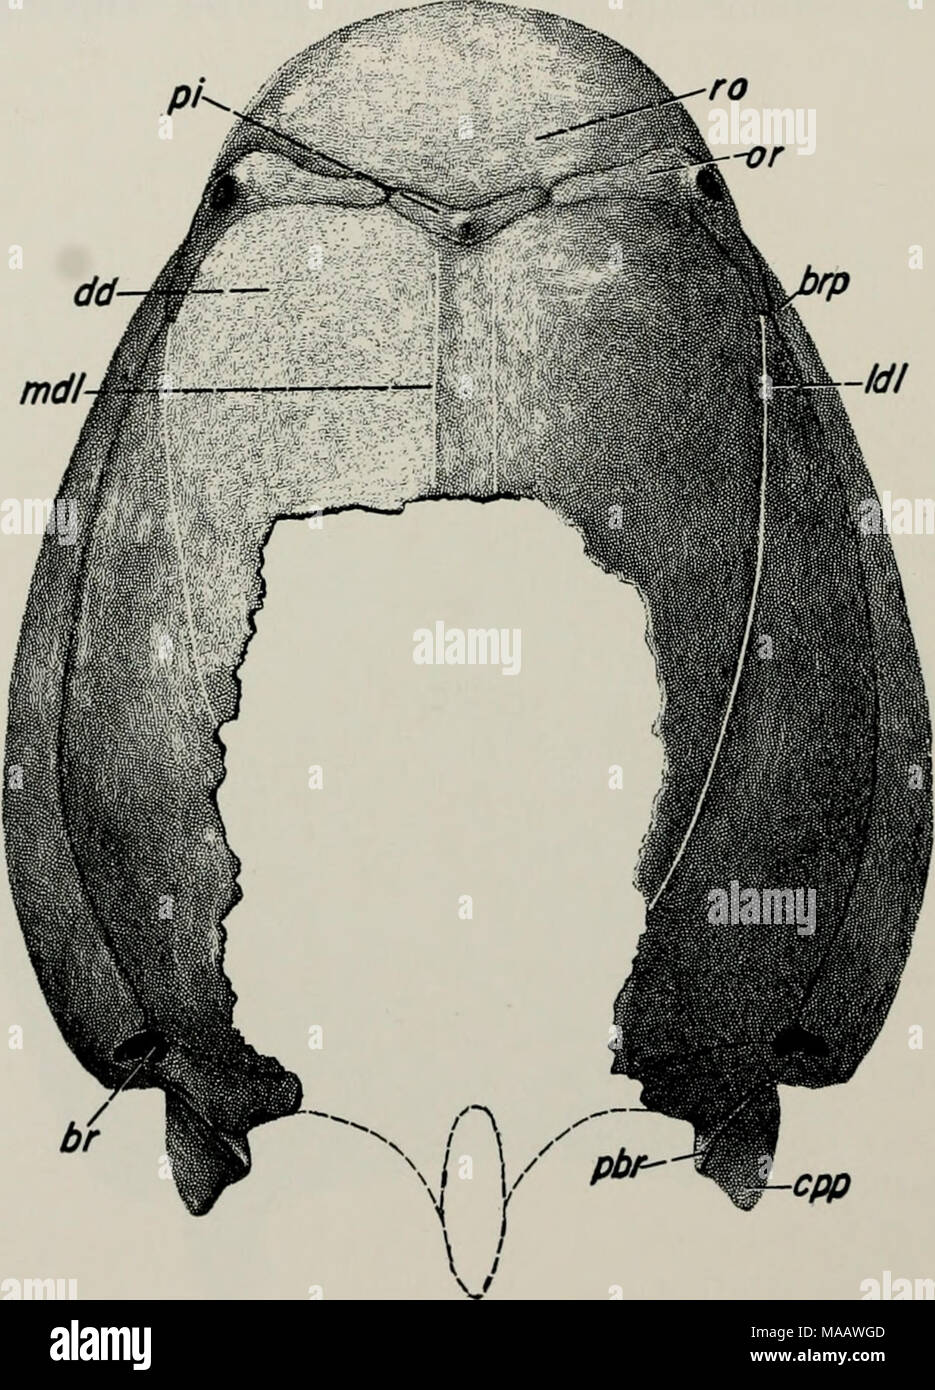 . Inizio pesci del Devoniano da Utah : Heteroostraci . Fig. 79. Restauro di protezione dorsale di Protaspis cfr bucheri, Stati Uniti sulla base di N.M. 20524 (x 1'2)- br, apertura brachiale; brp, piastra brachiale; cpp, scala posteriore-come processo di piastra cornual; dd, dorsale disco; Idl, dorsale laterale linea sensoriale; mdl, mediana dorsale linea sensoriale; o, piastra orbitale; pbr, processo posteriore della piastra brachiale; pi, pineale piastra; ro, piastra rostrale. P. dorfi. Questa regione non è chiaramente visualizzato in qualsiasi dell'Orso- dente Butte P. hucheri, ma un provino immaginato da Bryant (1933, pi. 1) sembra avere un simile arrang Foto Stock